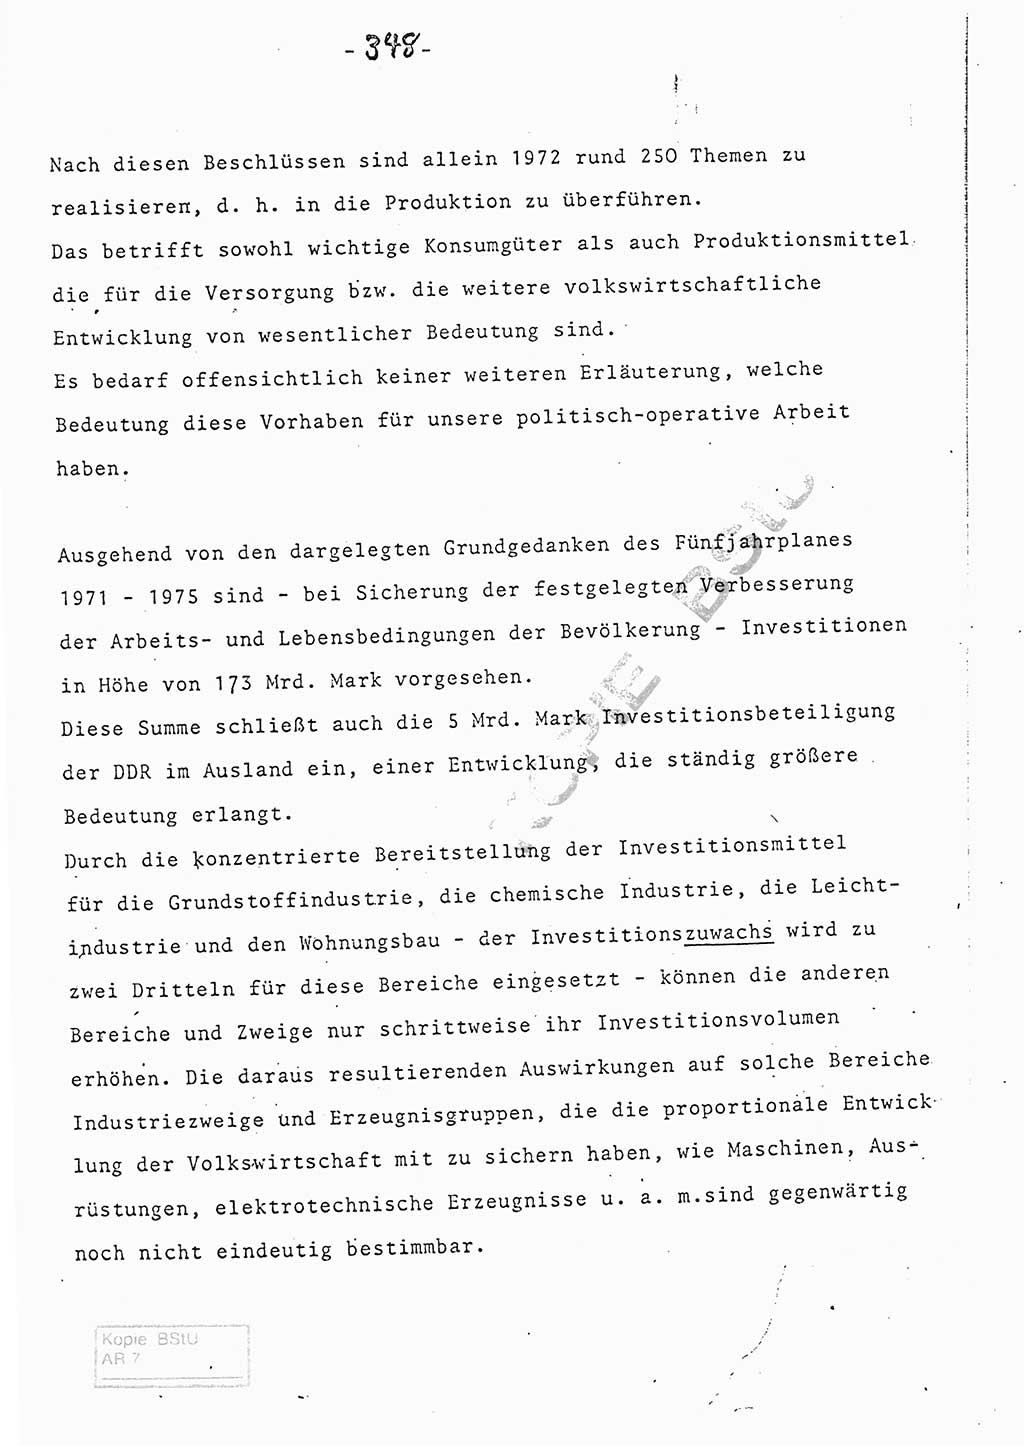 Referat (Entwurf) des Genossen Minister (Generaloberst Erich Mielke) auf der Dienstkonferenz 1972, Ministerium für Staatssicherheit (MfS) [Deutsche Demokratische Republik (DDR)], Der Minister, Geheime Verschlußsache (GVS) 008-150/72, Berlin 25.2.1972, Seite 348 (Ref. Entw. DK MfS DDR Min. GVS 008-150/72 1972, S. 348)